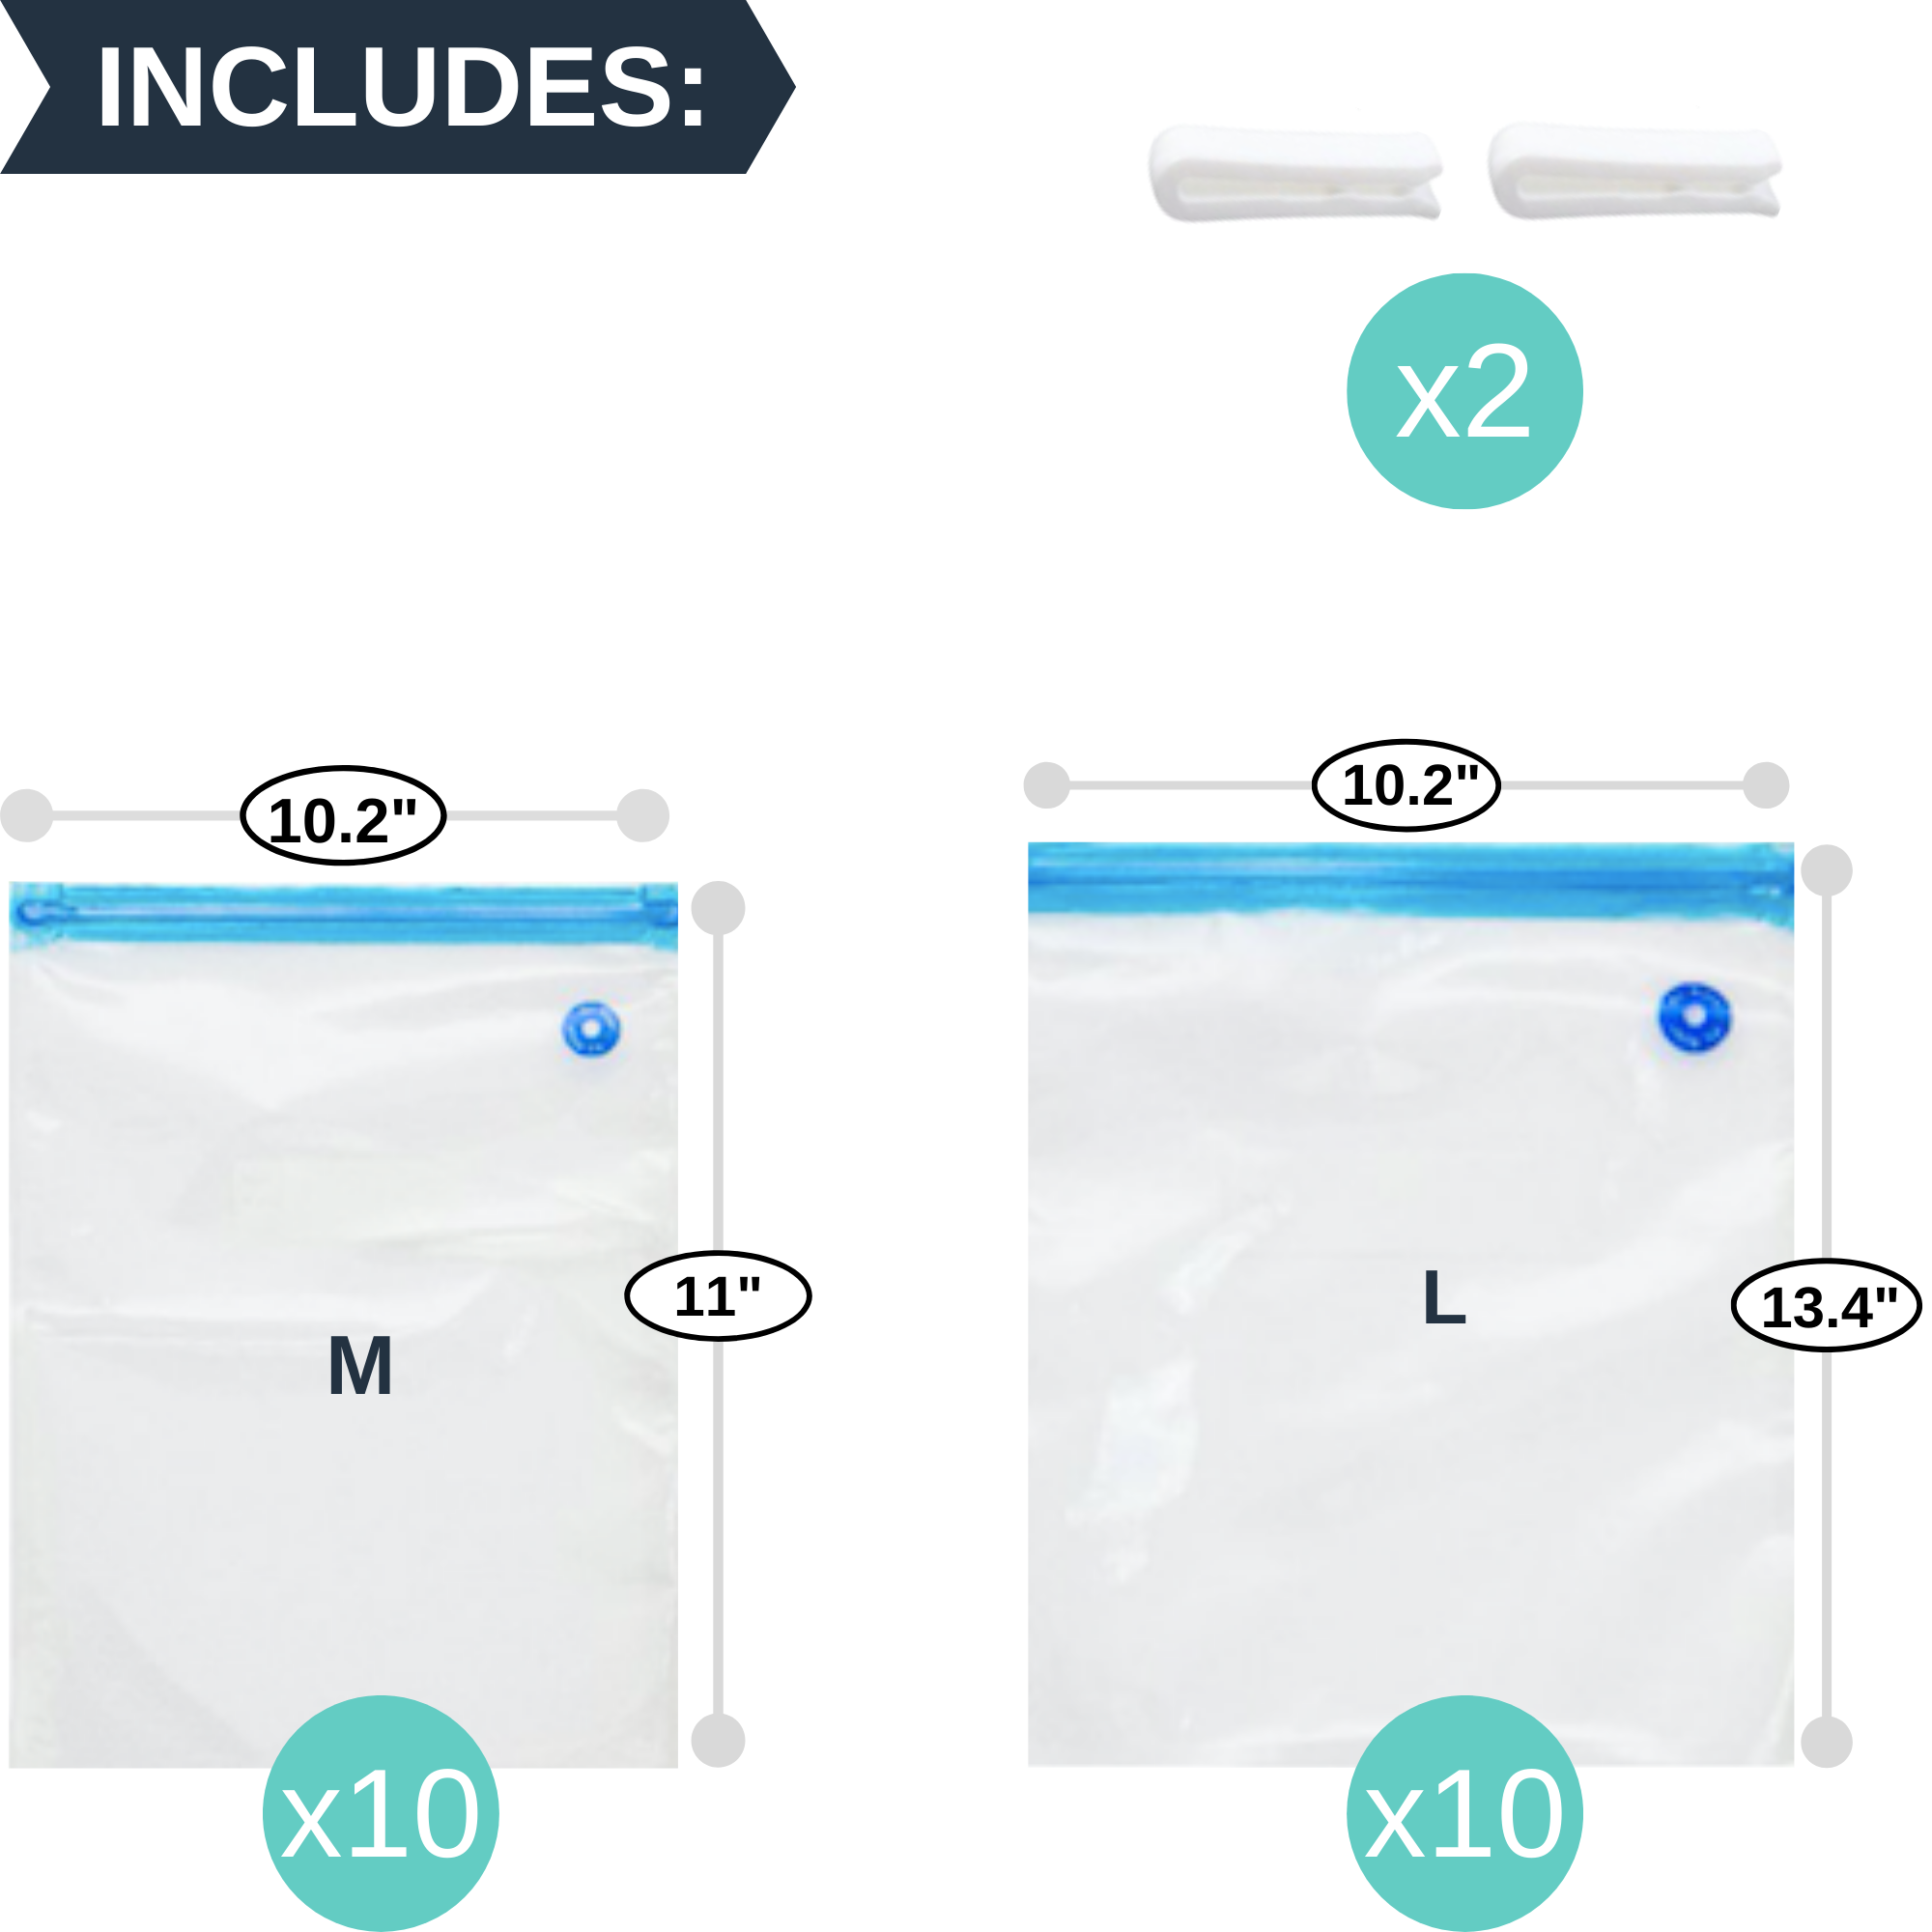 20pack Reusable Vacuum Zipper Seal Bags Quart, Gallon Size for Sous Vi –  SousBear